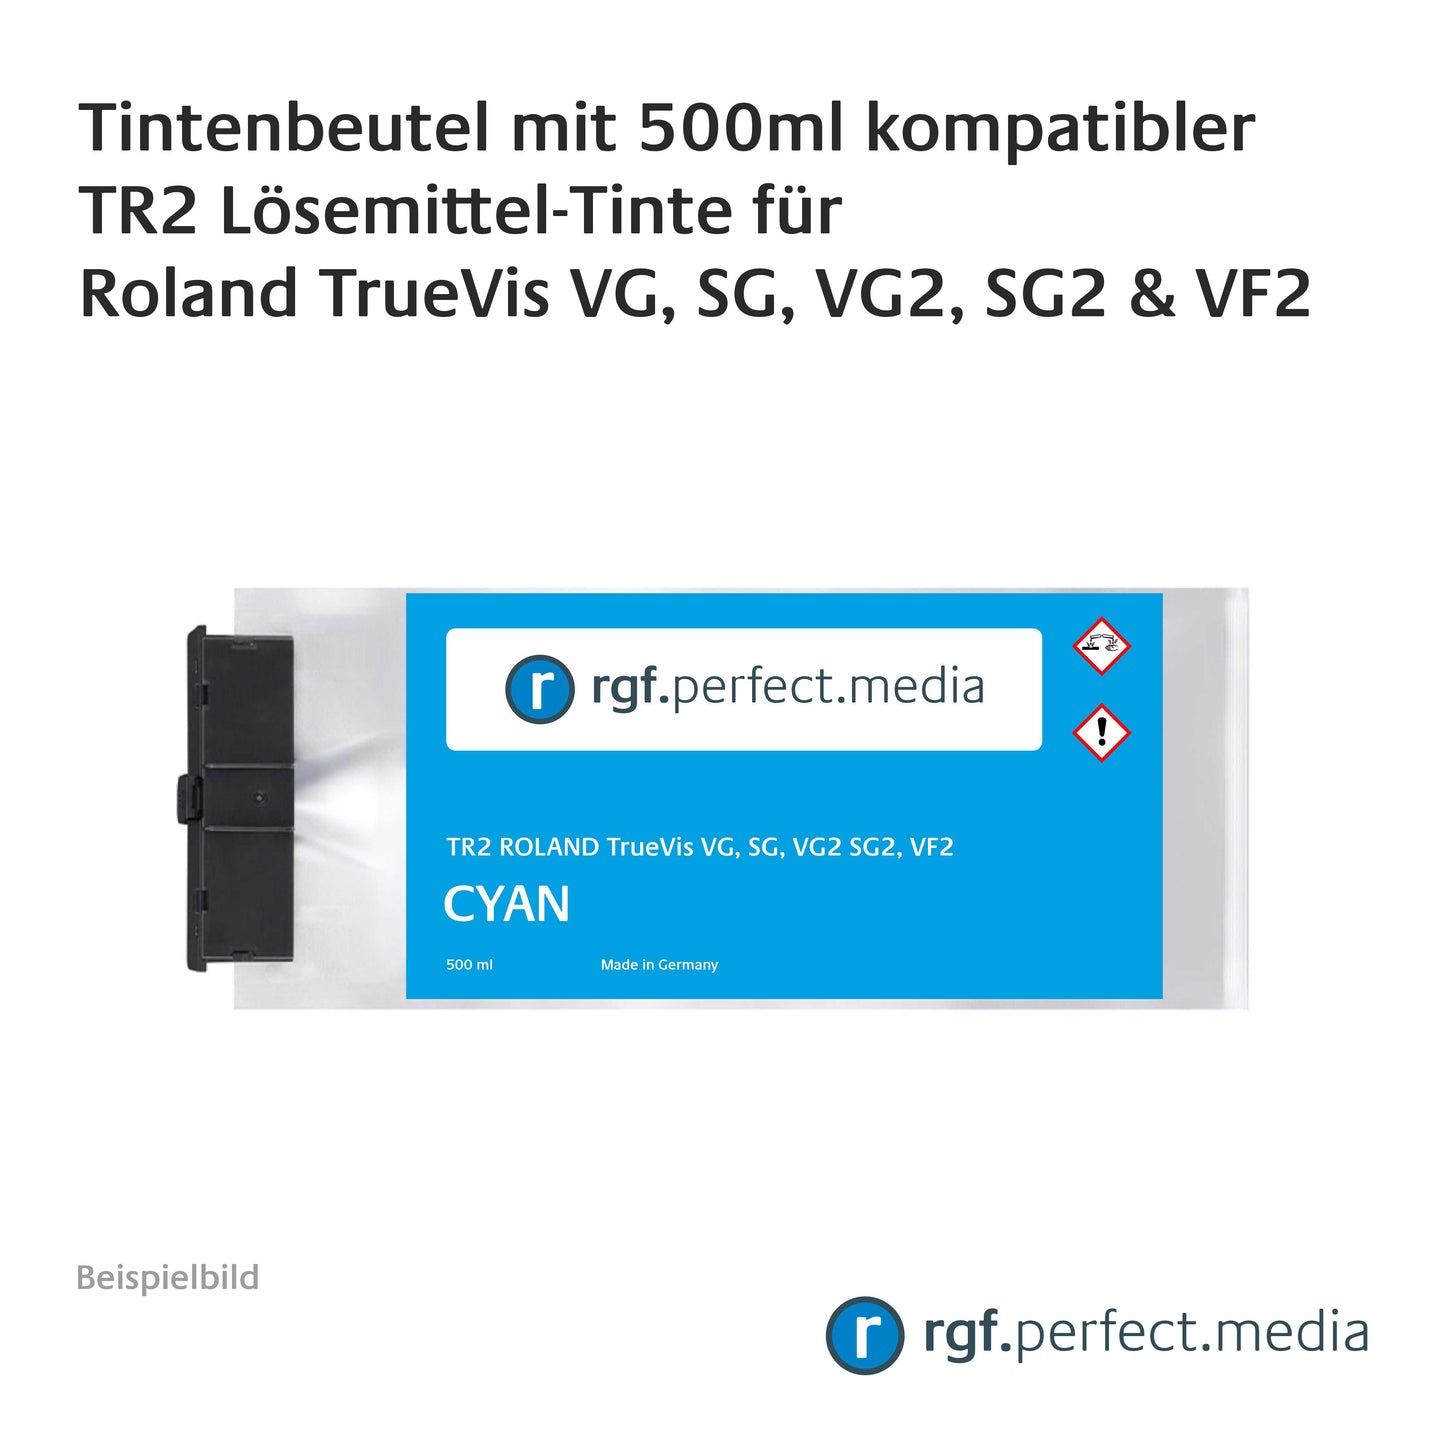 Tintenbeutel mit 500ml TR2 kompatibler Lösemittel-Tinte für Roland TrueVis VG, SG, VG2, SG2 und VF2 inklusive Chip